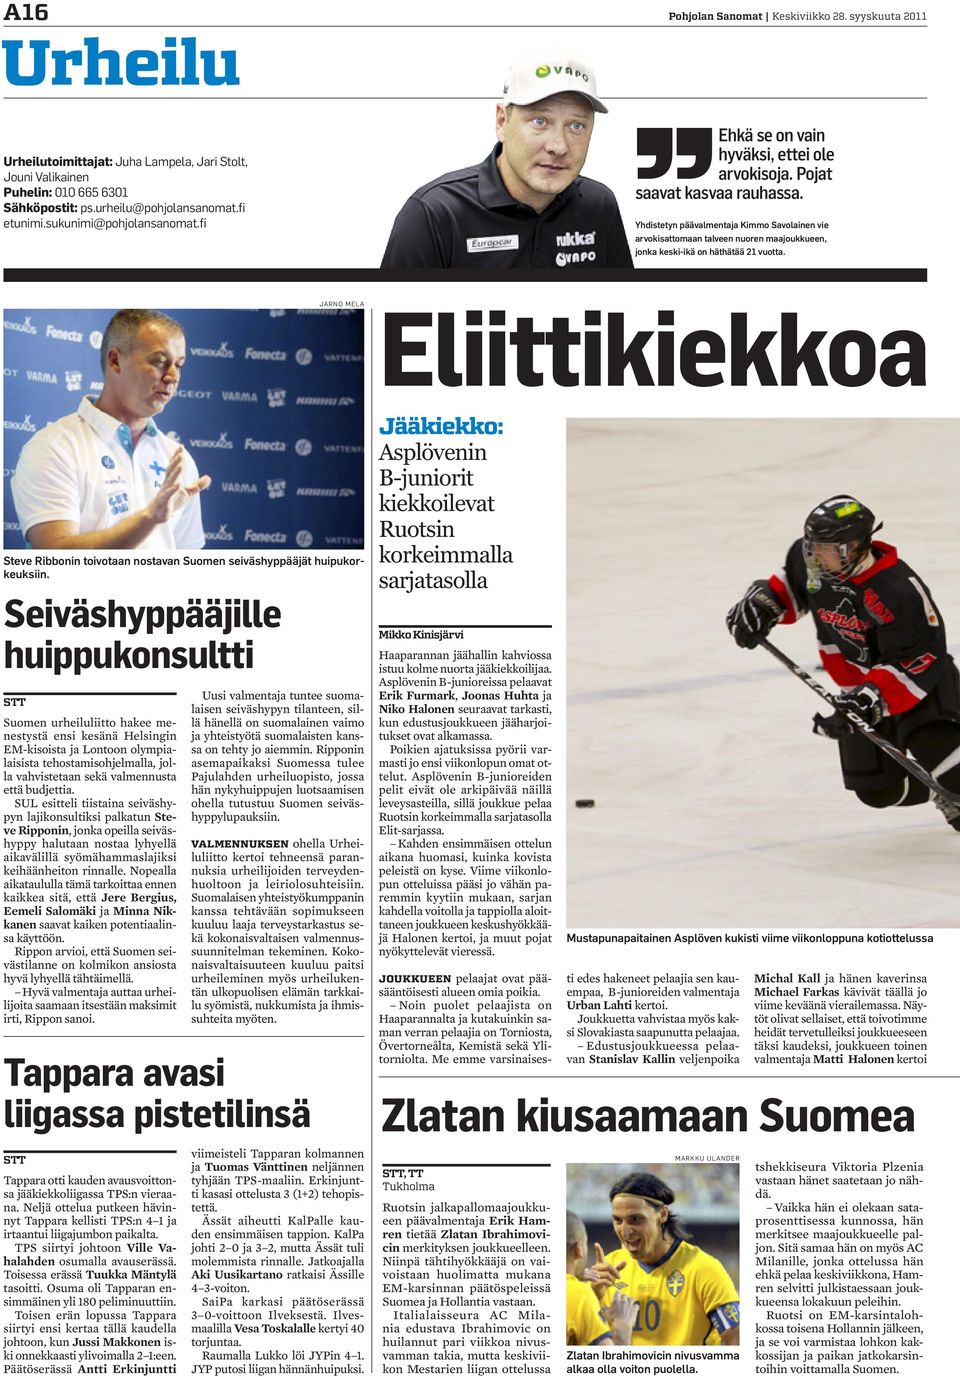 Yhdistetyn päävalmentaja Kimmo Savolainen vie arvokisattomaan talveen nuoren maajoukkueen, jonka keski-ikä on häthätää 21 vuotta.